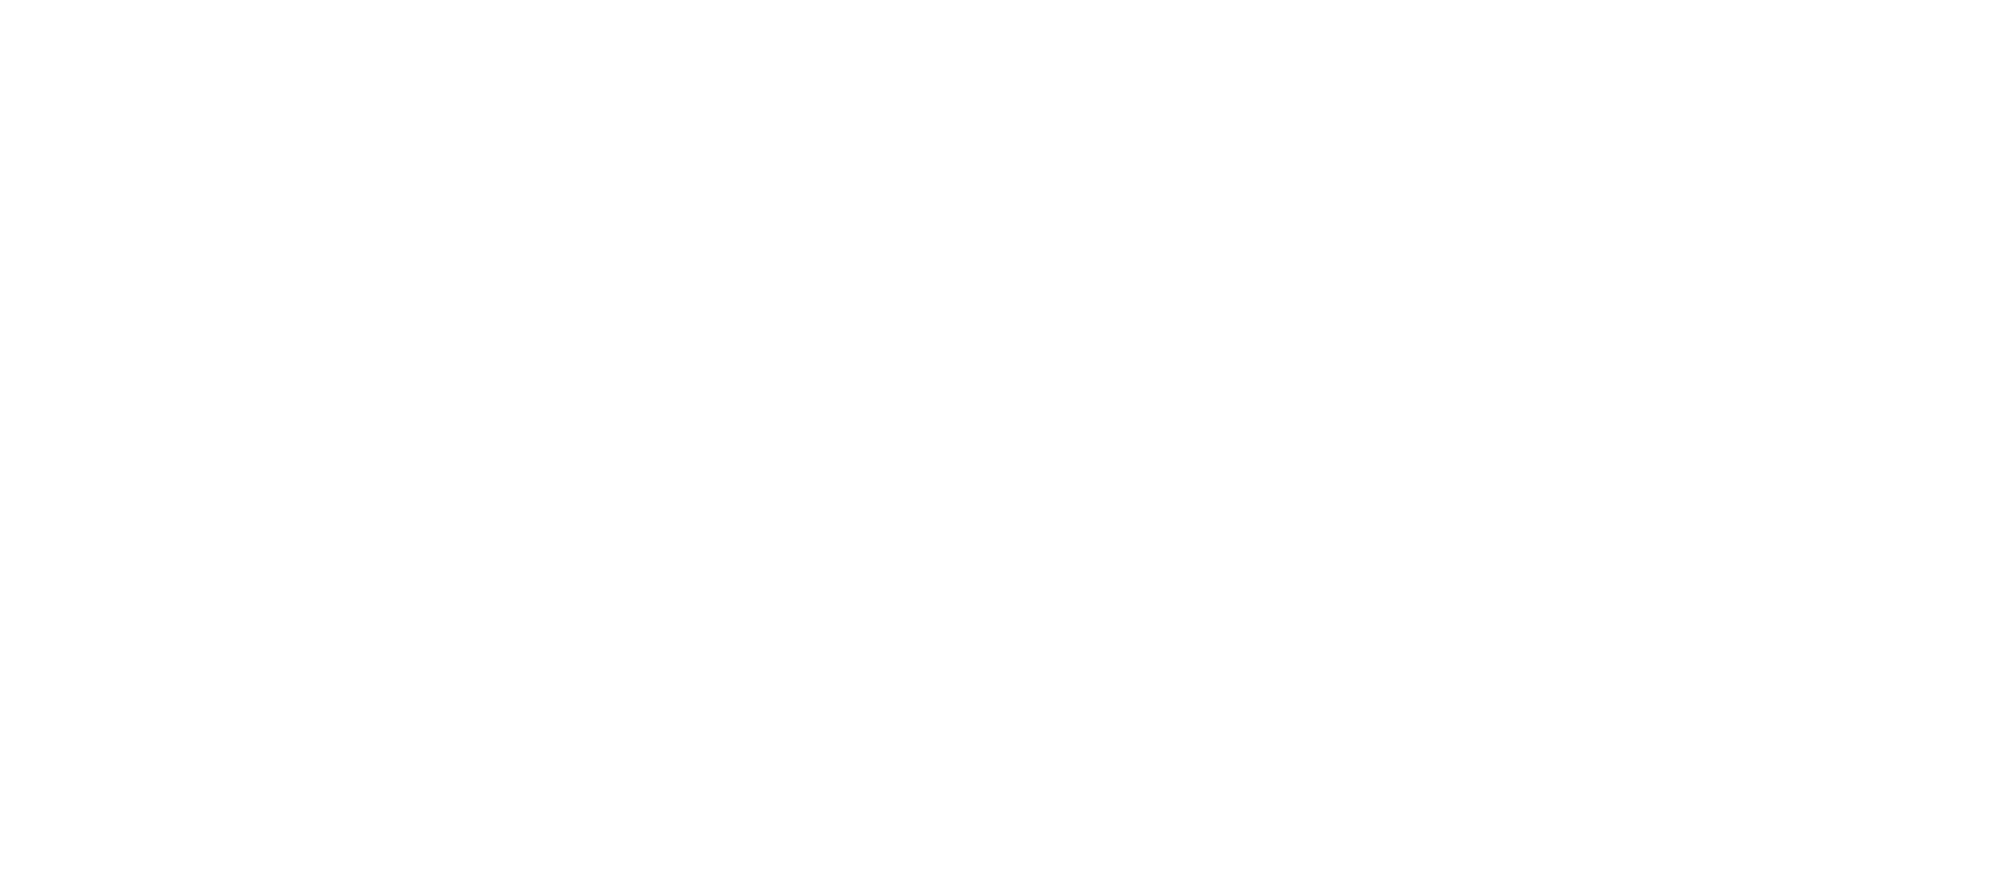 PLATINUM SALES OF BILLERICA, LLC